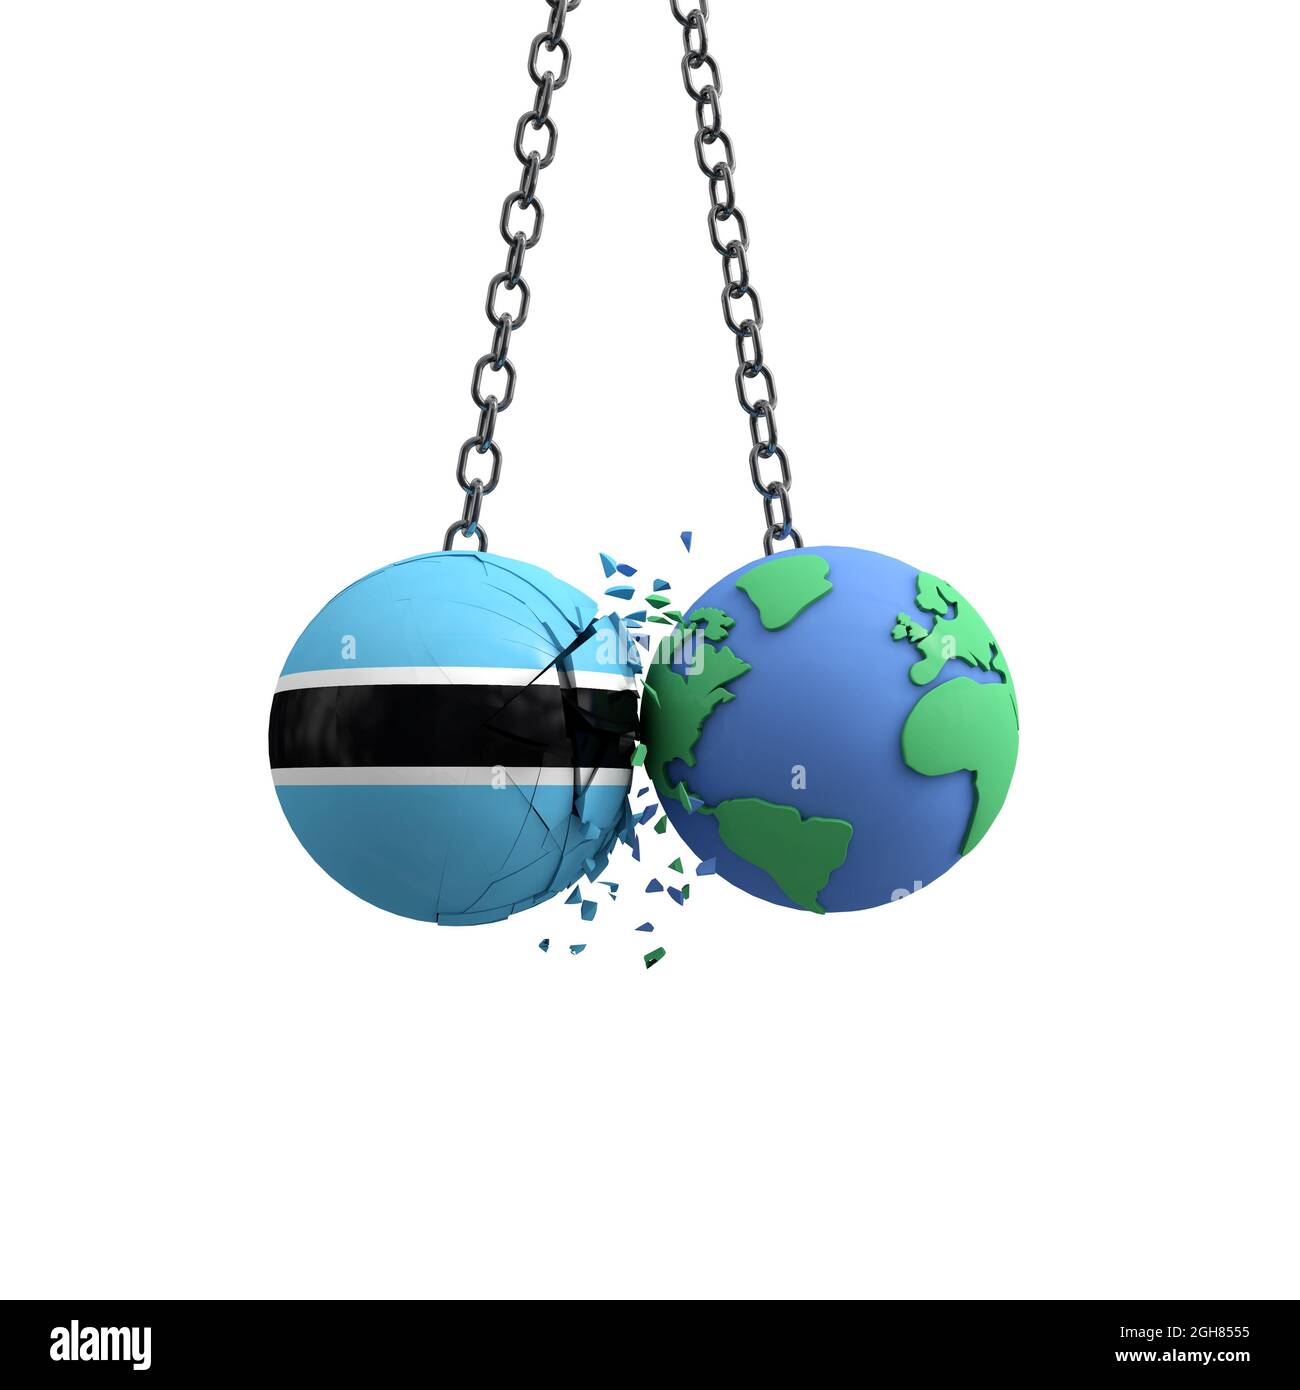 Le drapeau du Botswana frappe la planète terre. Concept d'impact sur l'environnement. Rendu 3D Banque D'Images